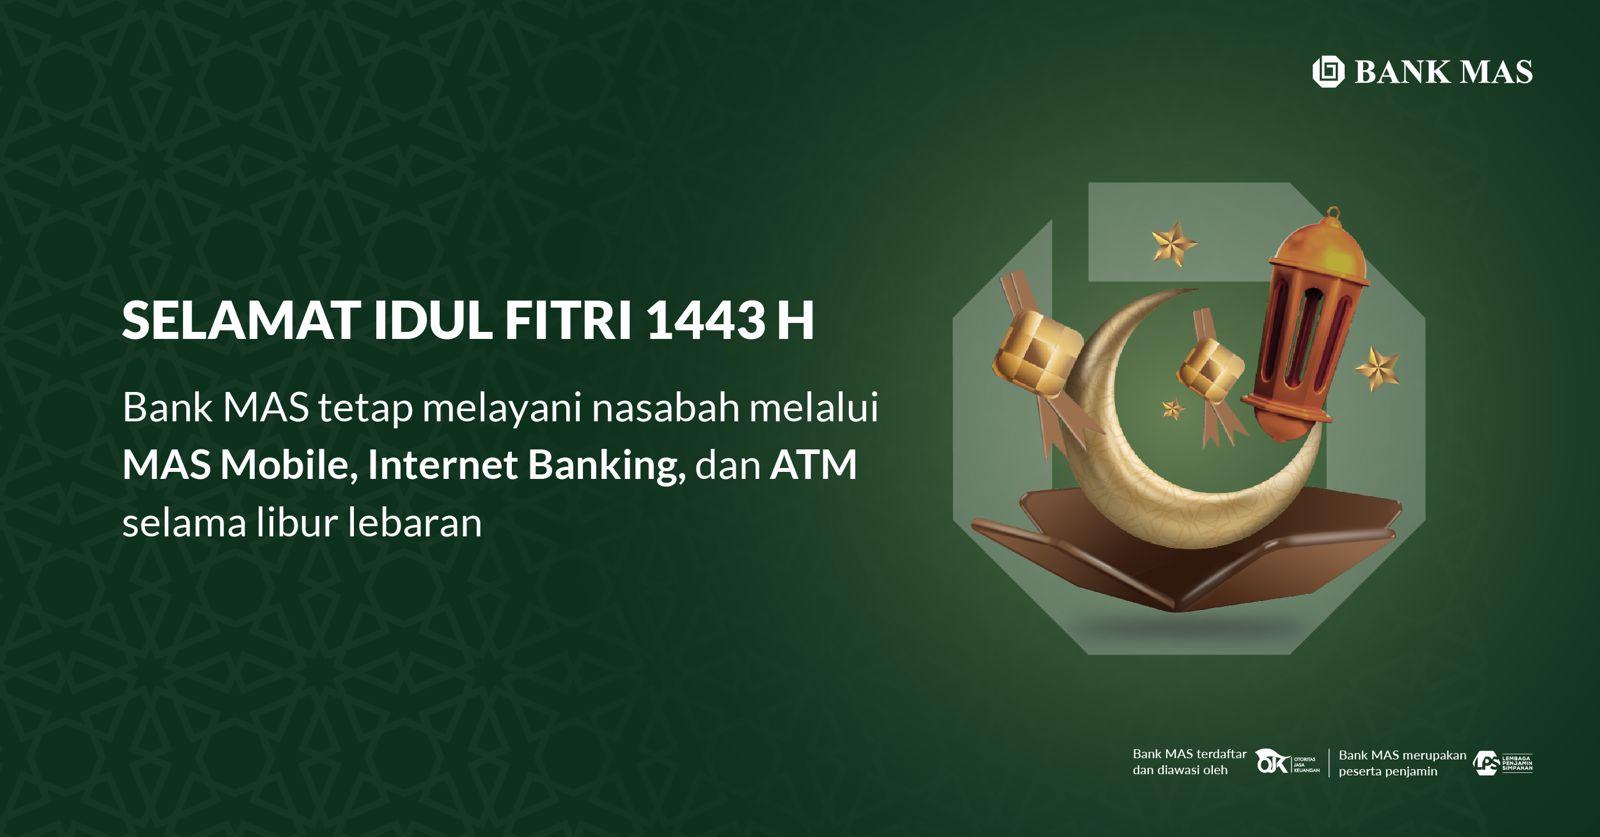 Informasi Layanan Bank MAS Selama Cuti Bersama Idul Fitri 1443H